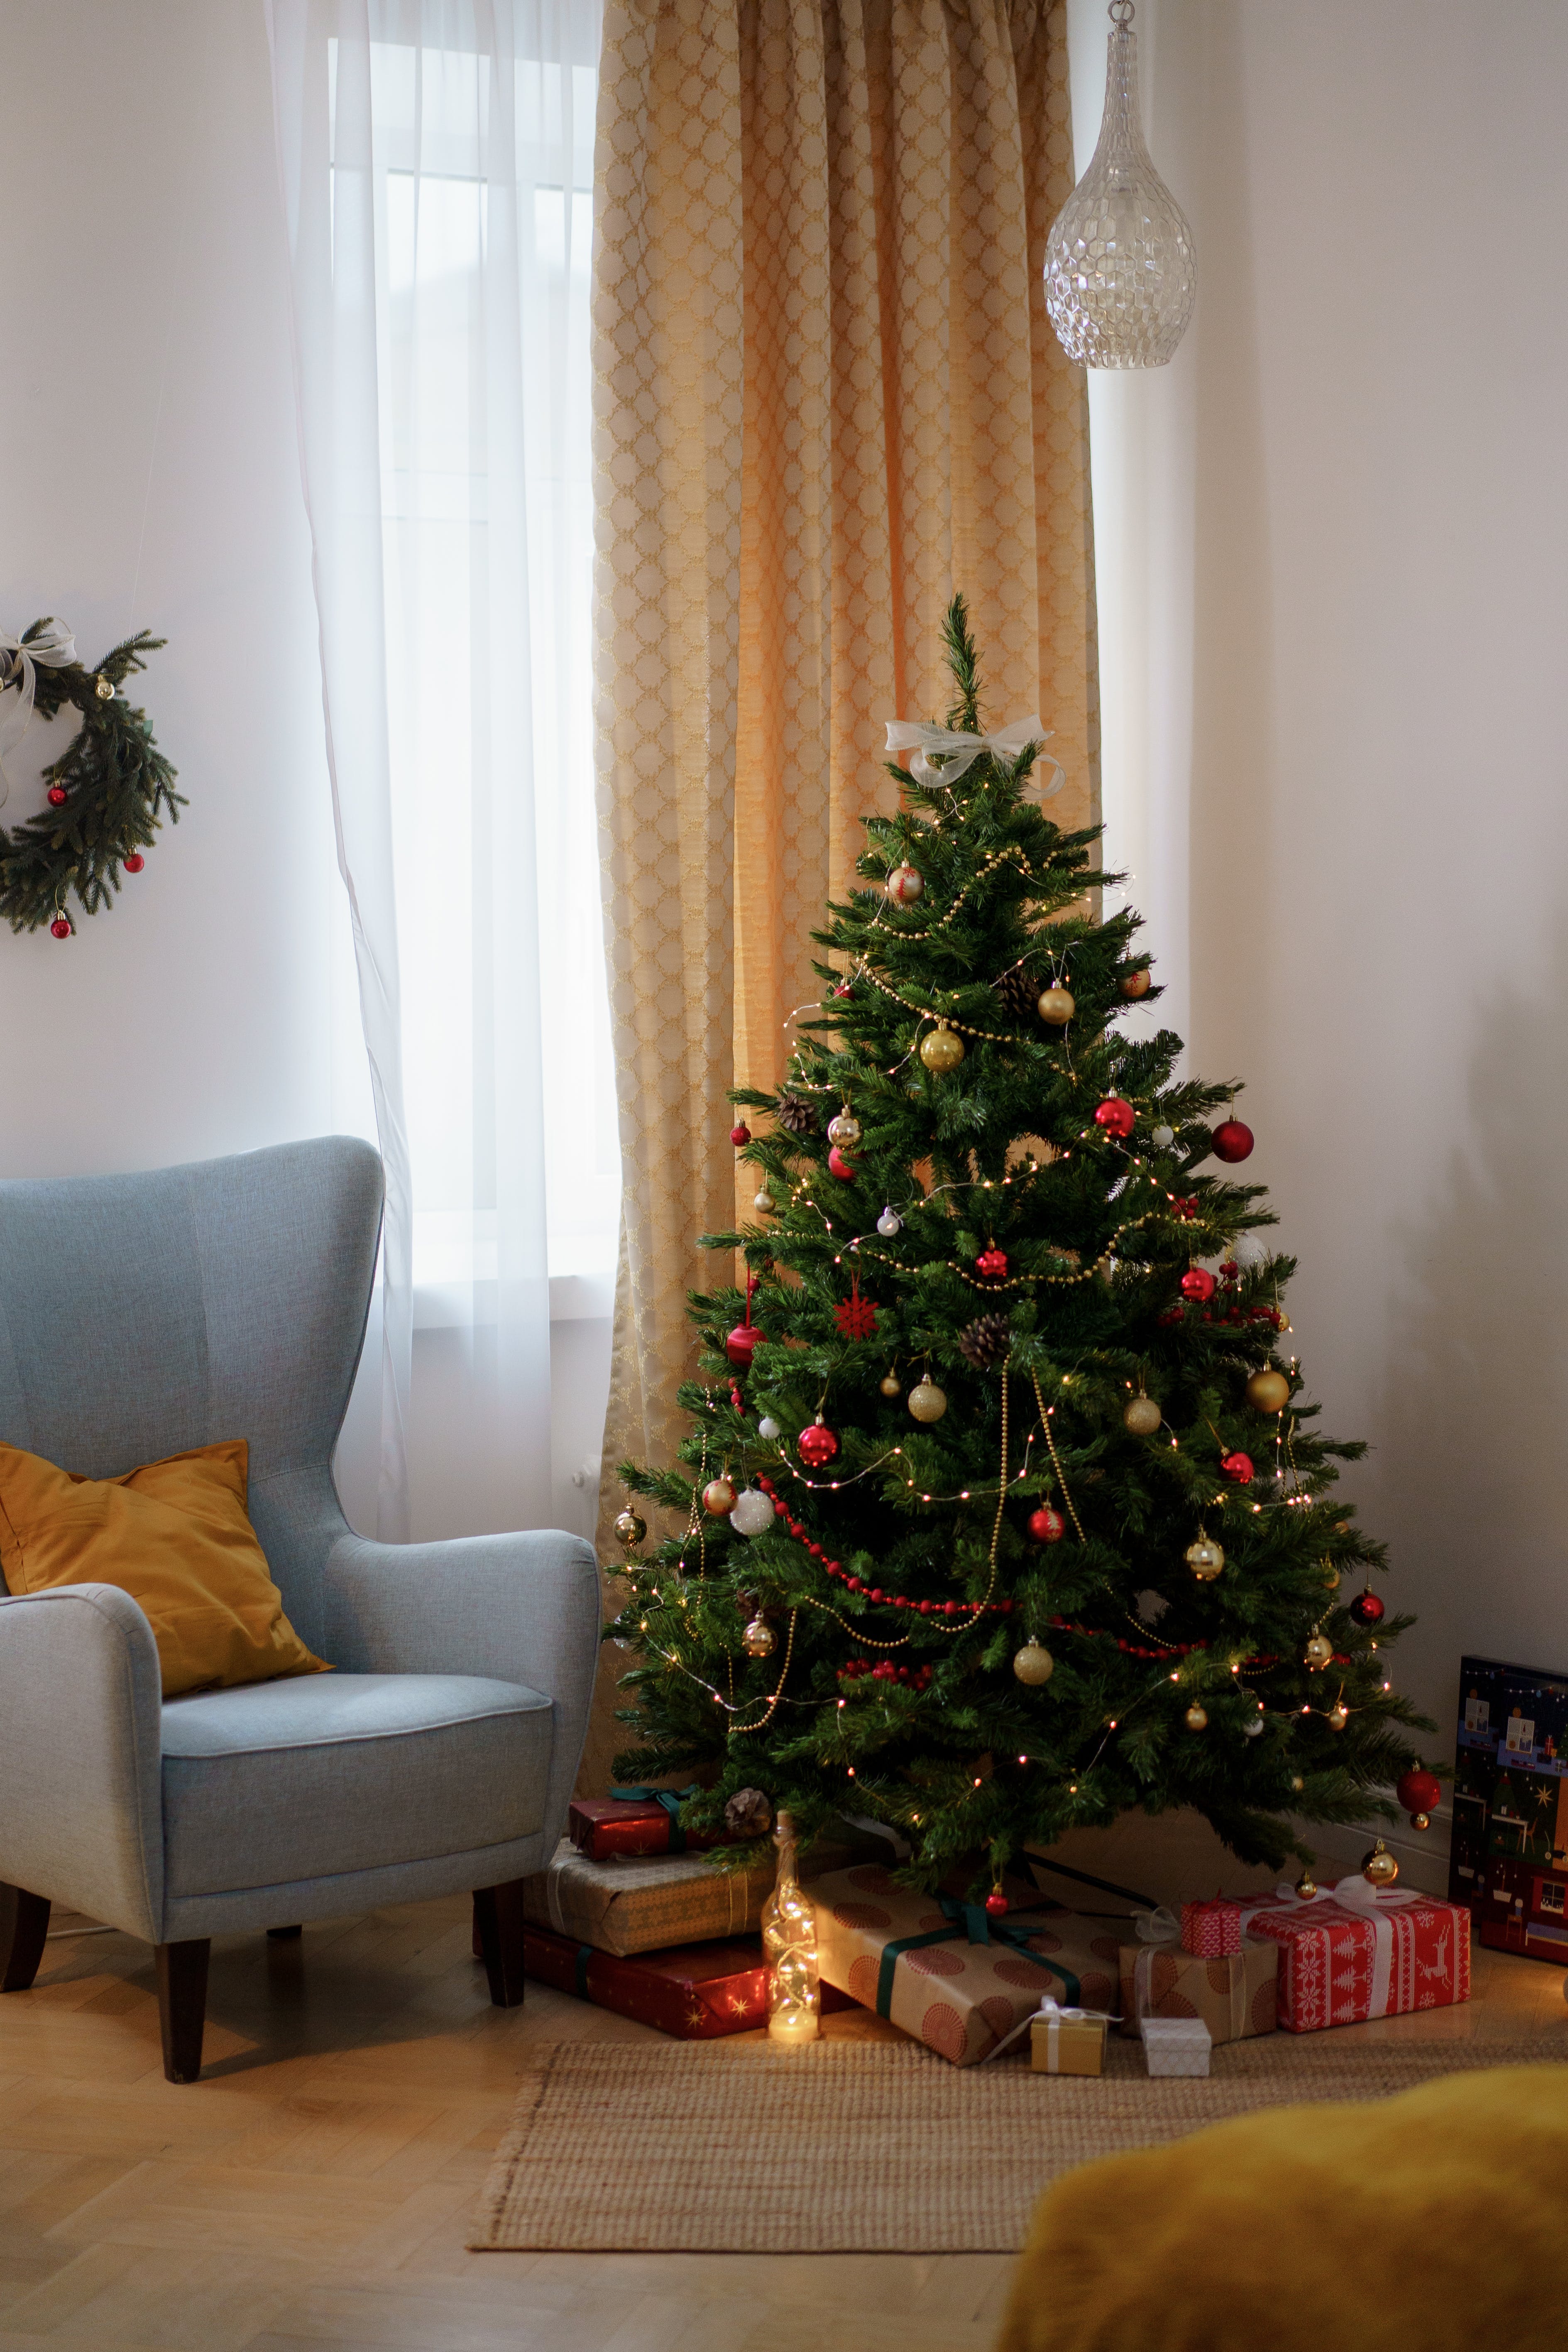 Ein aufgestellter Weihnachtsbaum | Quelle: Pexels